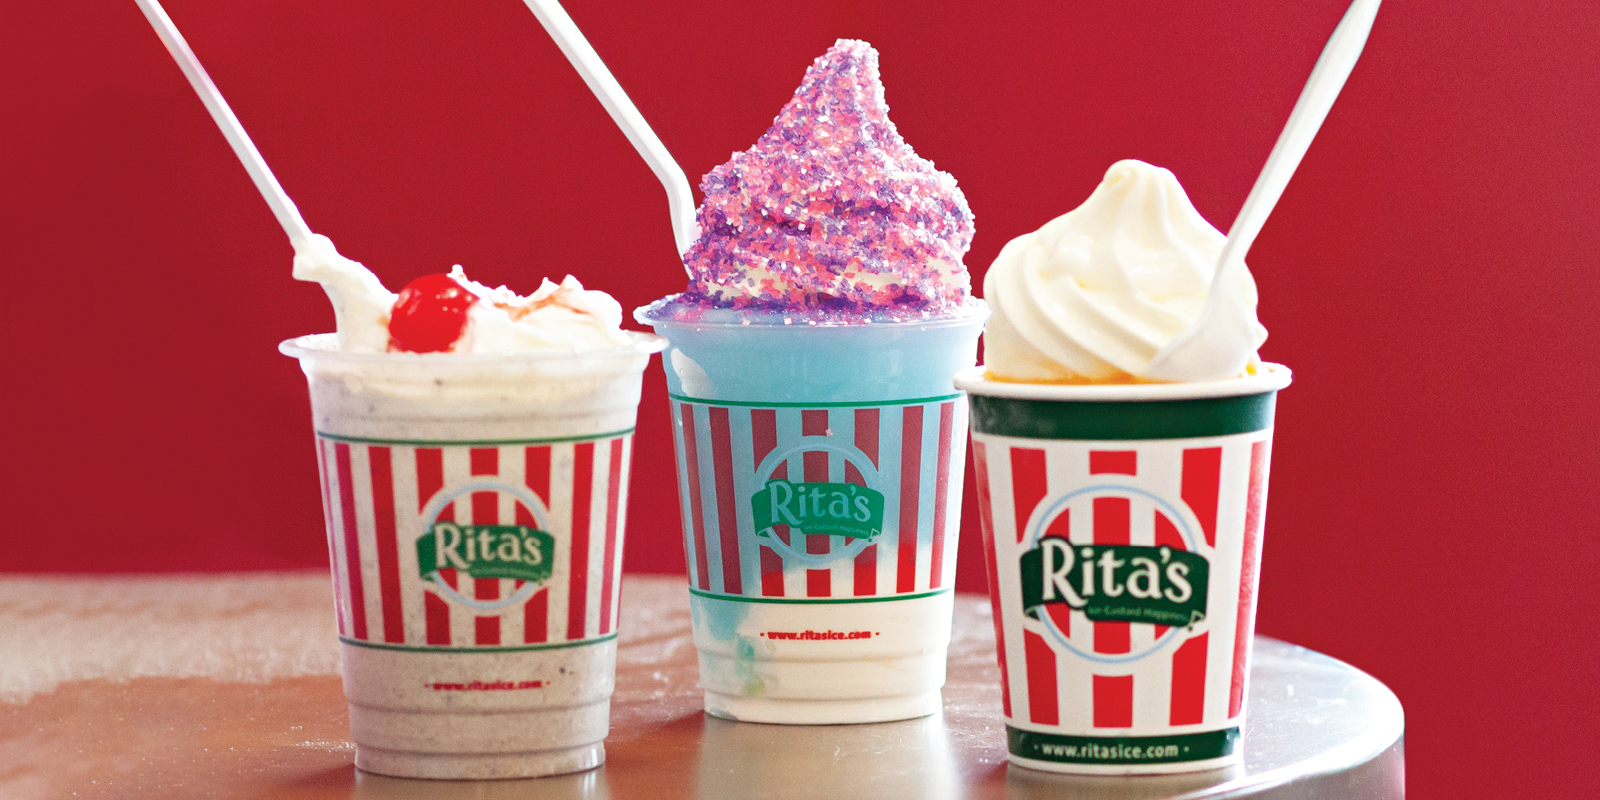 Rita's Ice Cream: Exploring a Popular Ice Cream Brand